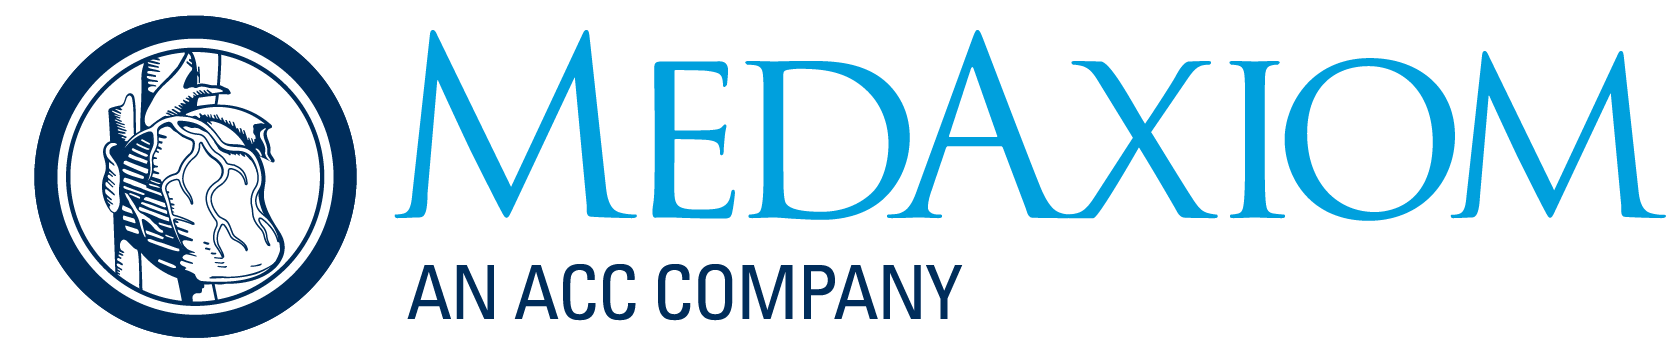 MedAxiom logo